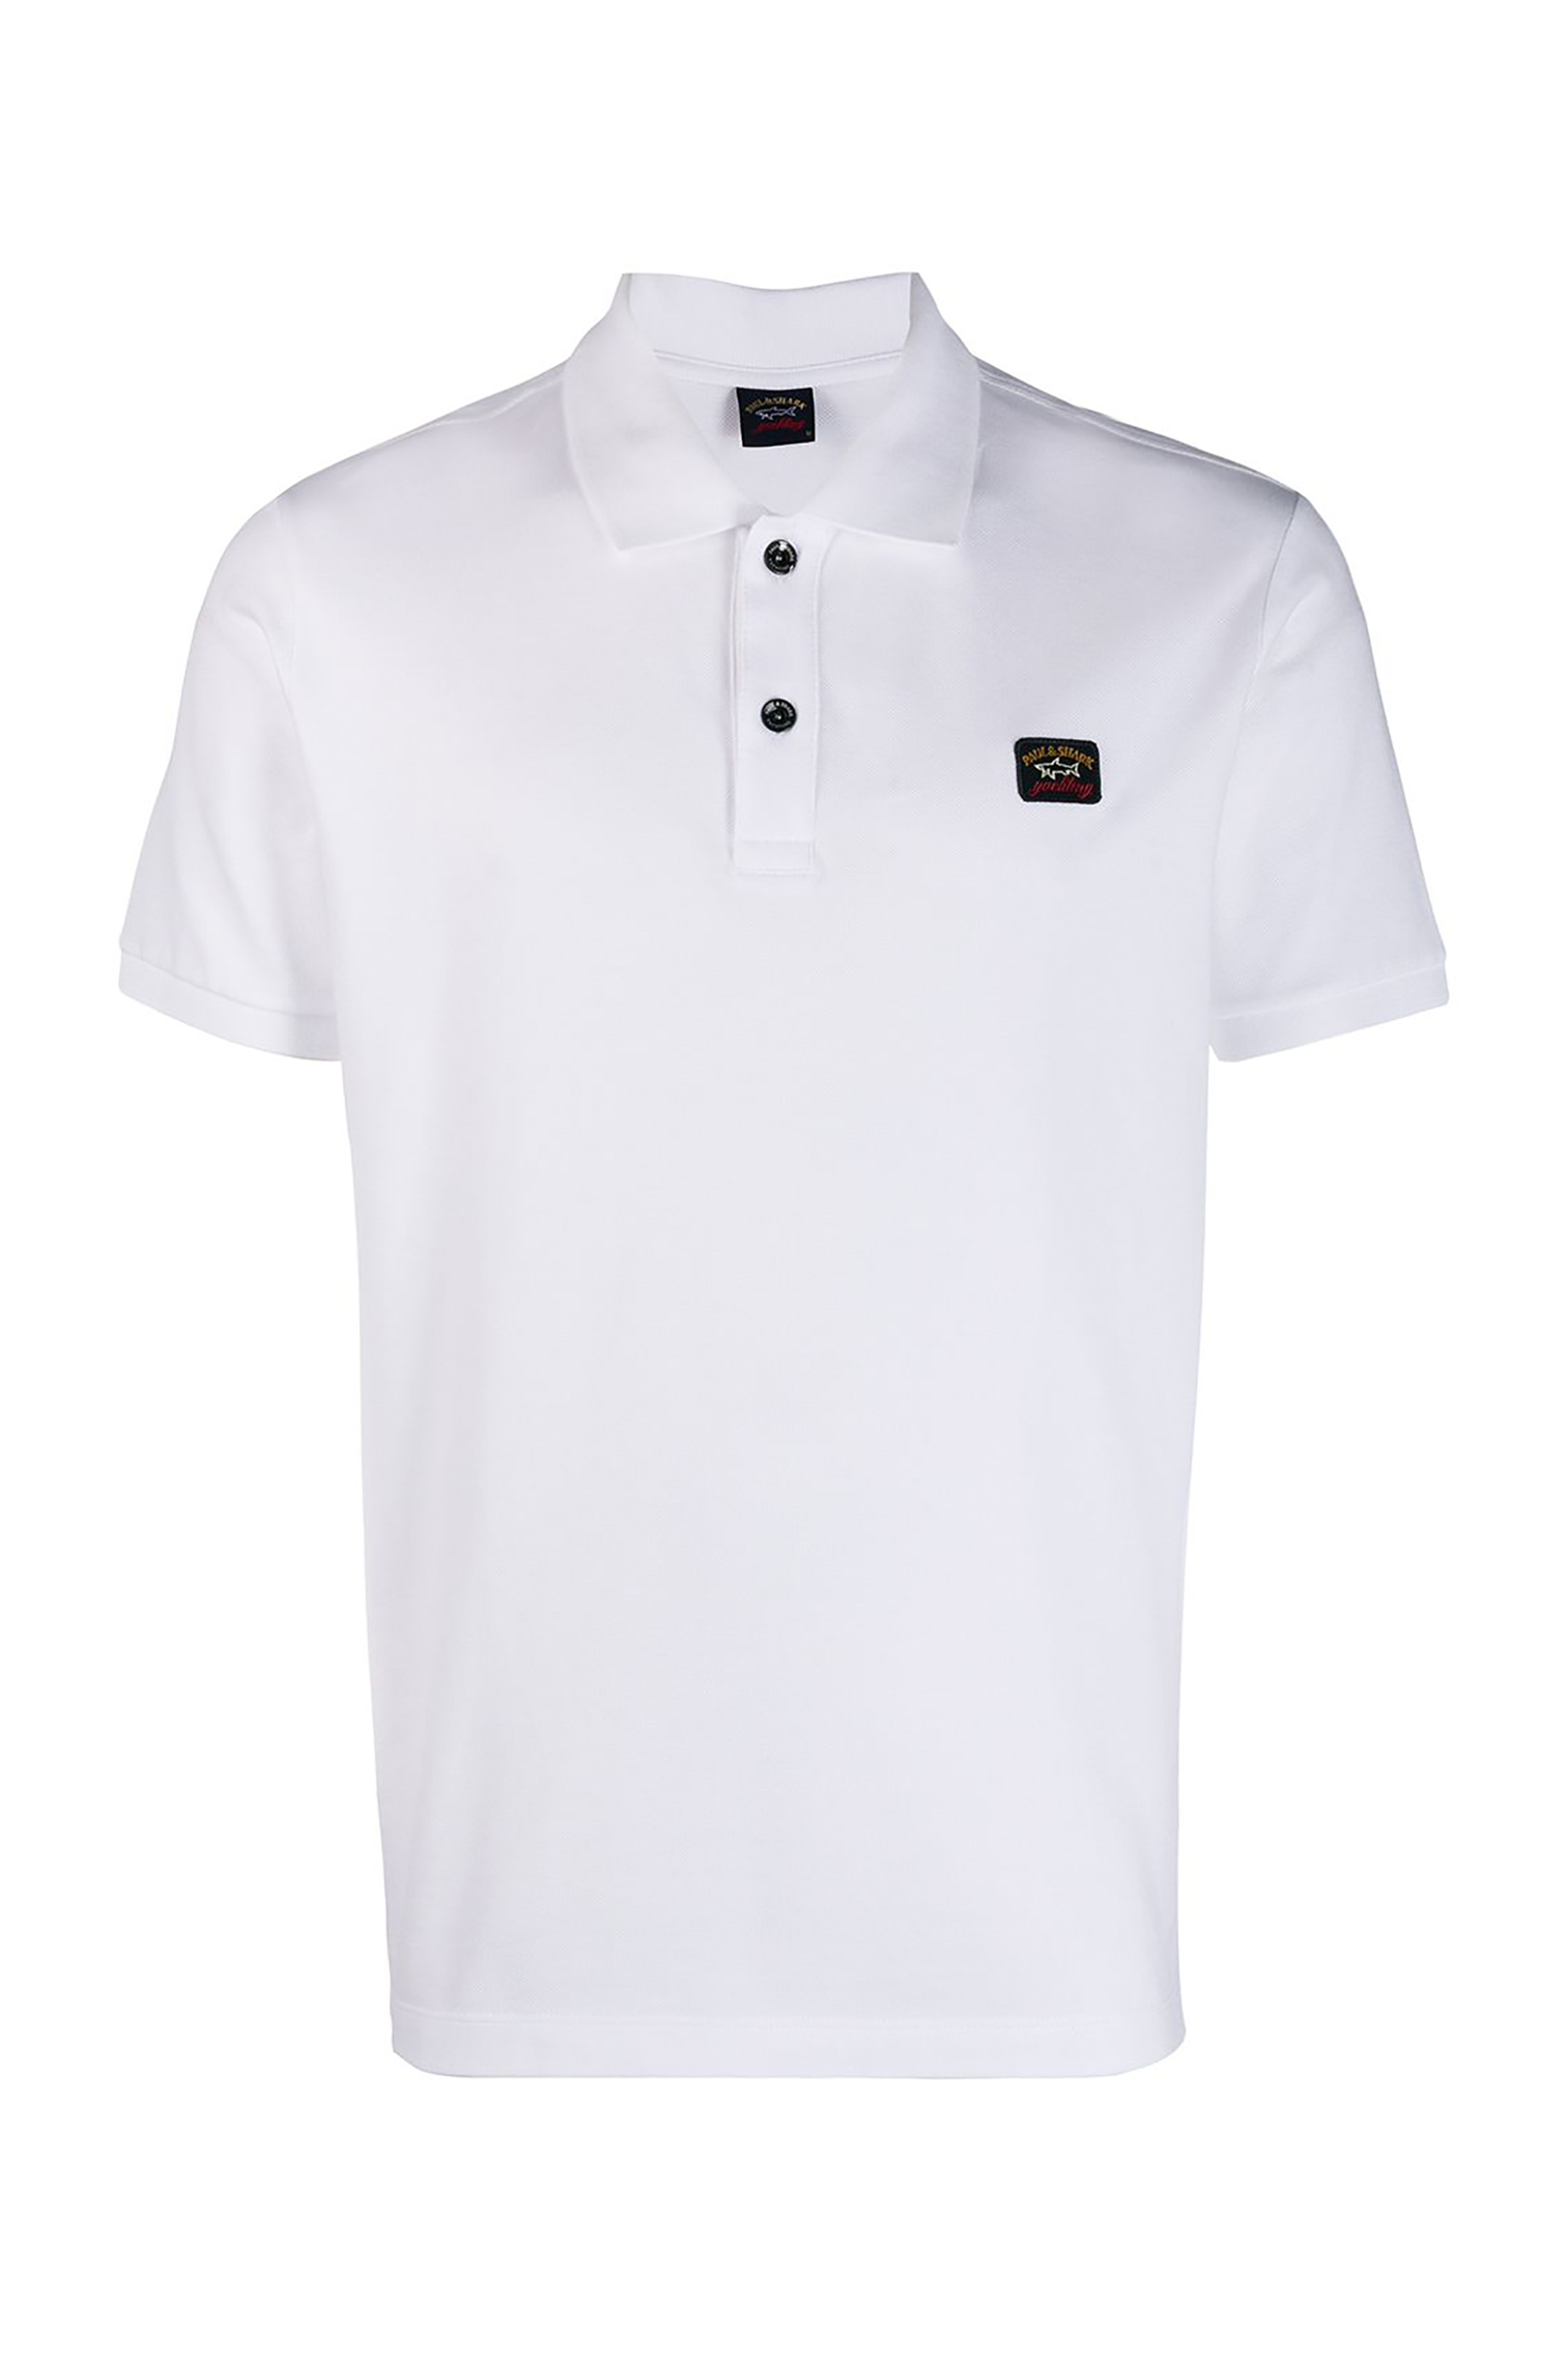 Ανδρική Μόδα > Ανδρικά Ρούχα > Ανδρικές Μπλούζες > Ανδρικές Μπλούζες Πολο Paul&Shark ανδρική πόλο μπλούζα με logo patch Relaxed Fit - C0P1070 Λευκό